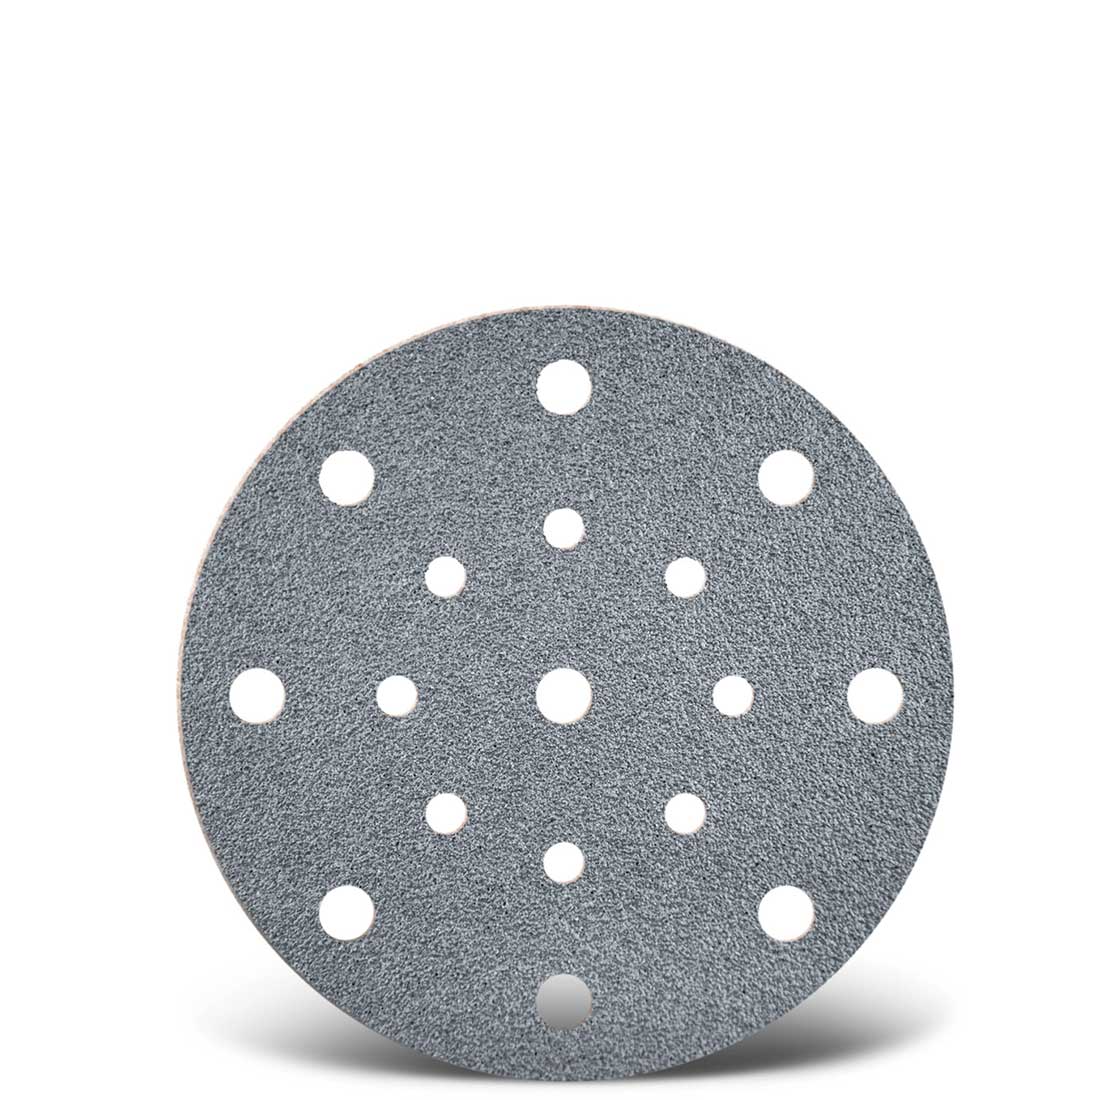 Dischi abrasivi velcrati MENZER per levigatrici rotorbitali, G40–400, Ø 150 mm / 17 fori / corindone semi-friabile con stearato